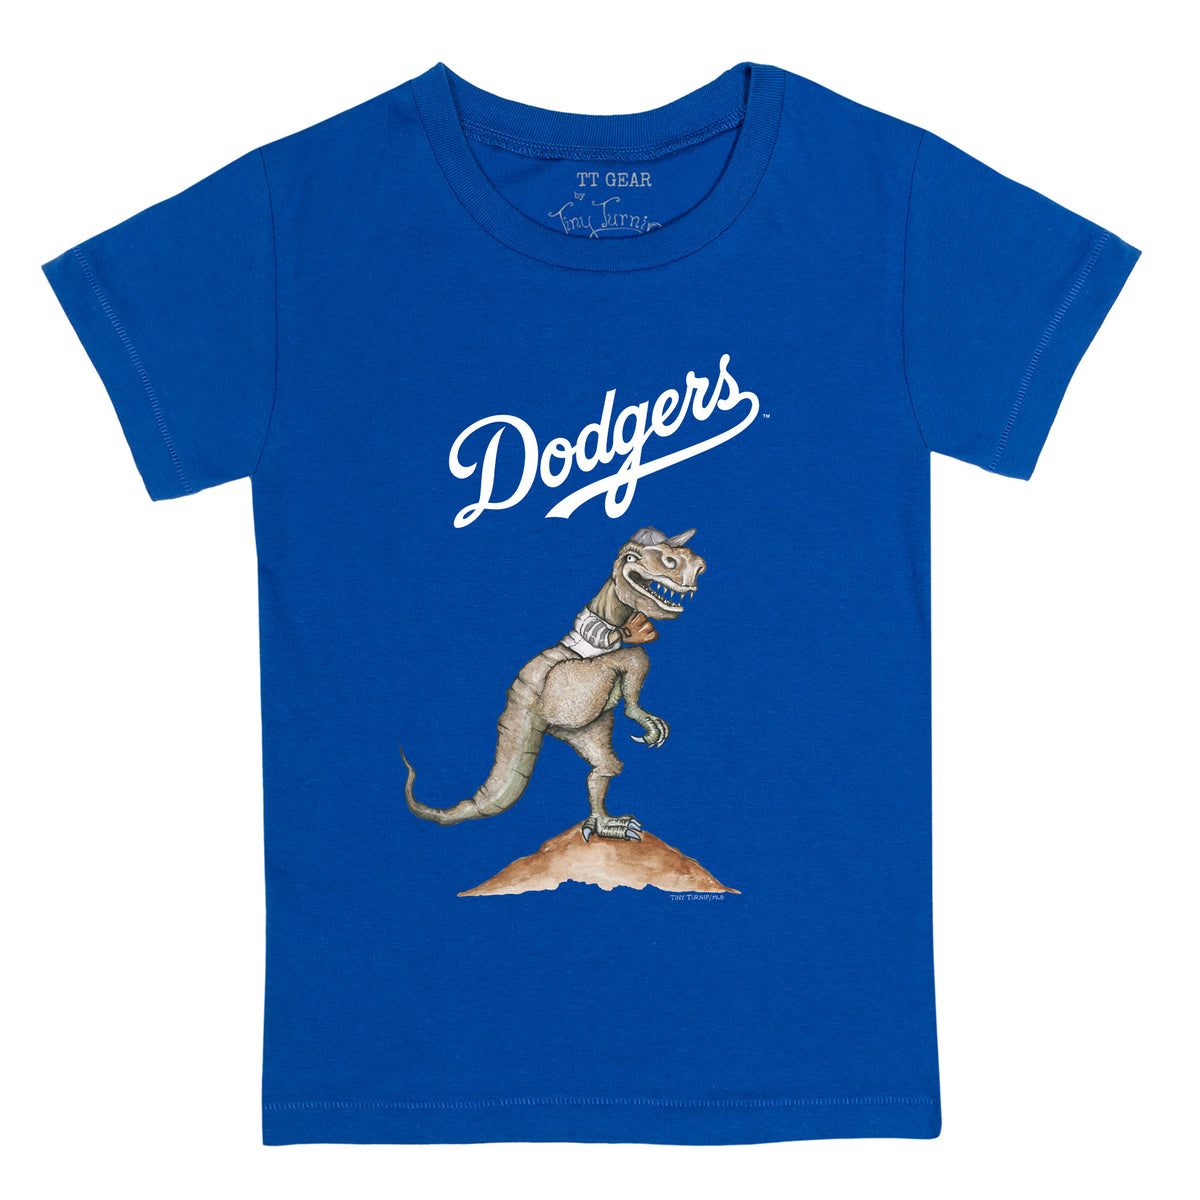 dodgers dinosaur shirt